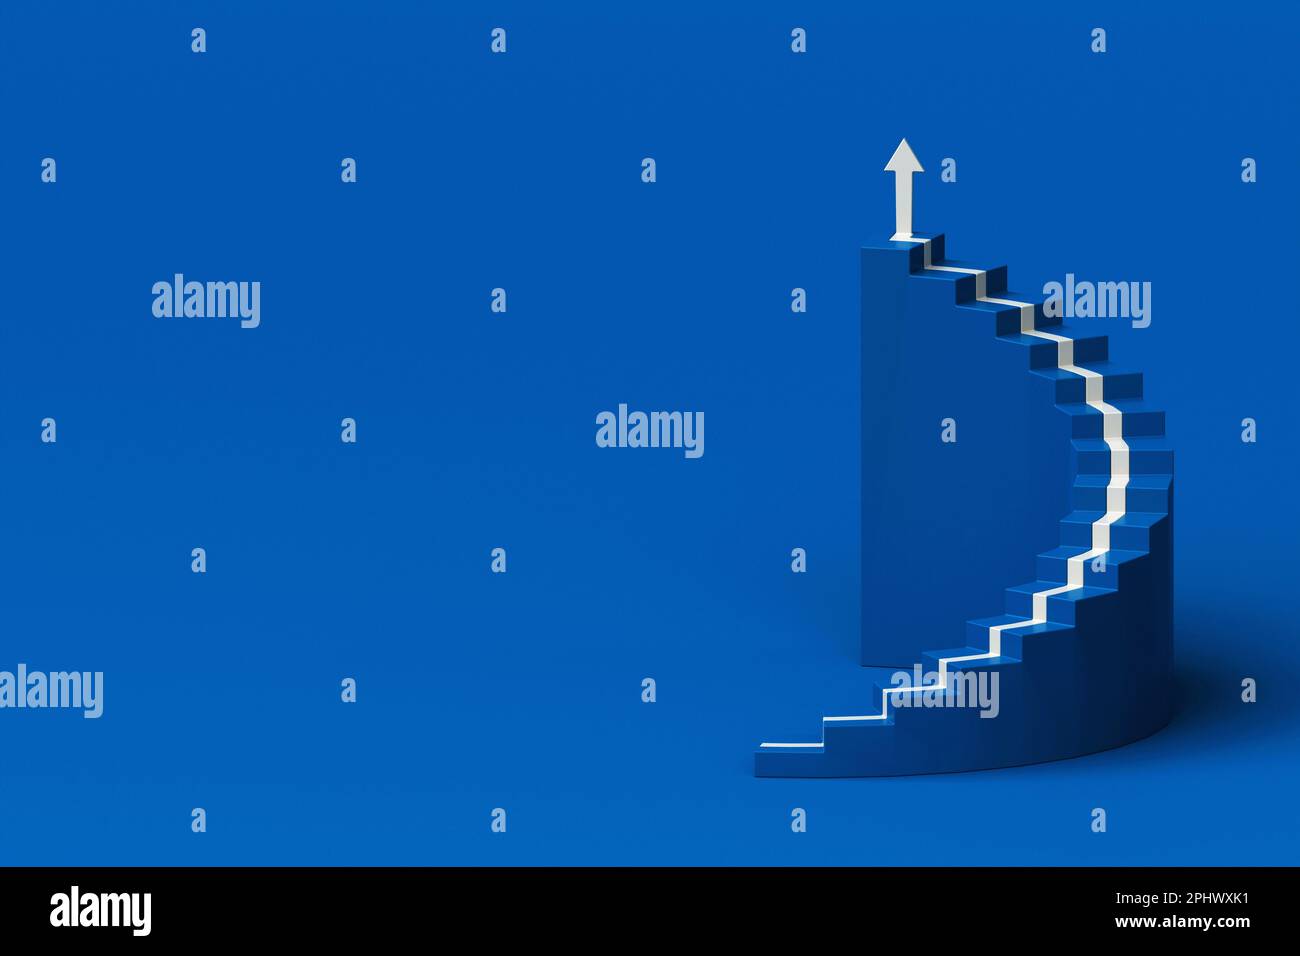 Flèche blanche suivant l'escalier en spirale de la croissance sur fond bleu, flèche de 3D grimpant sur l'escalier en spirale, 3D escaliers avec flèche allant vers le haut Banque D'Images